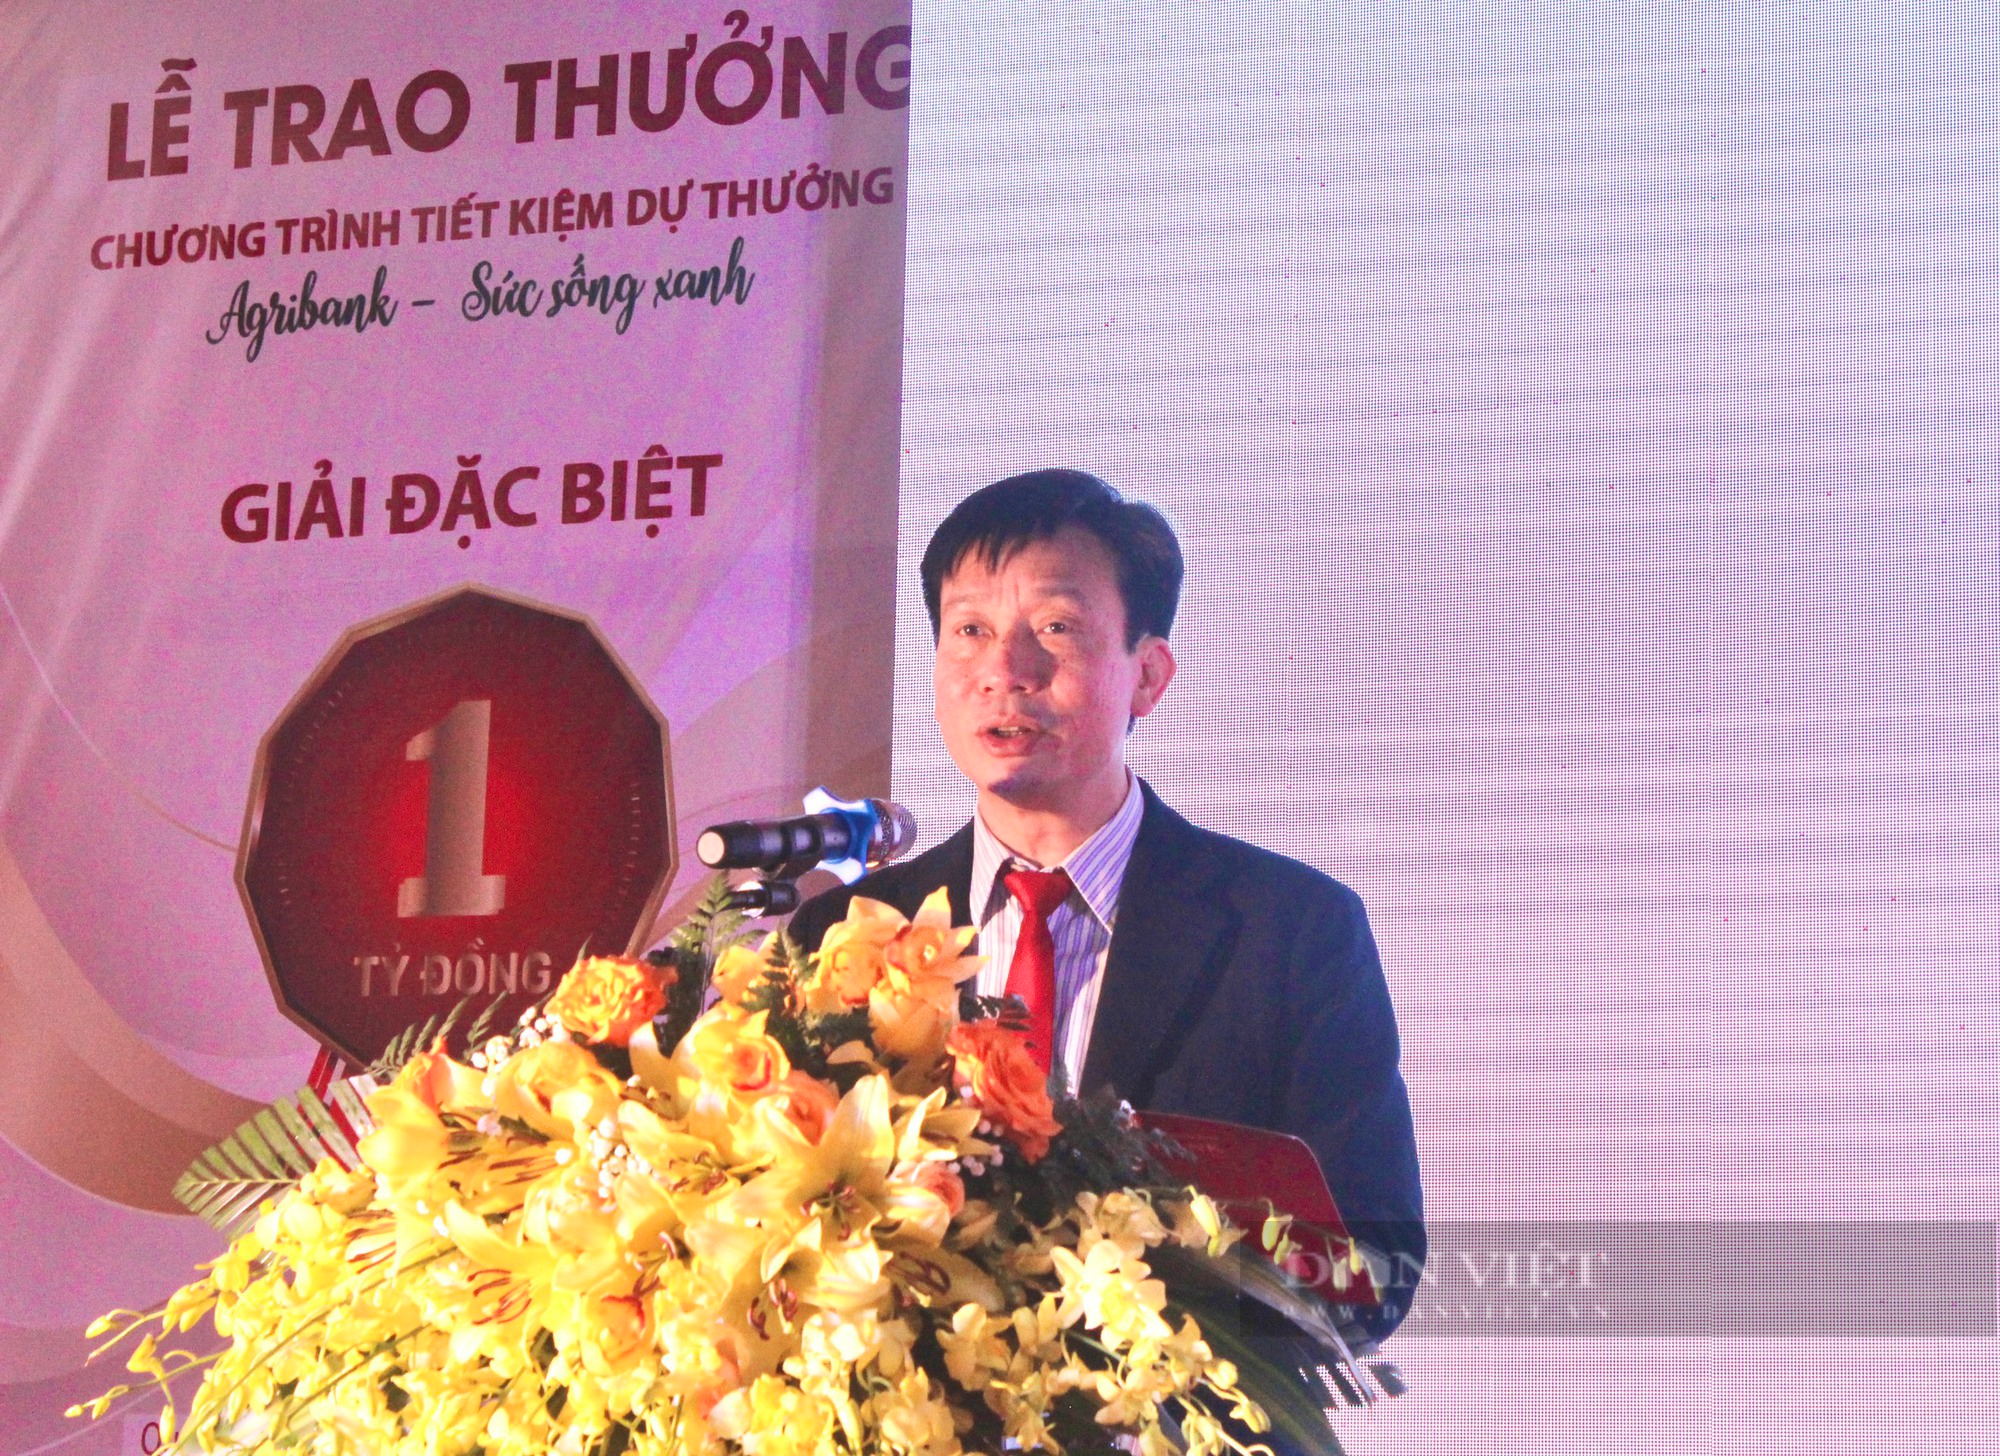 Một nông dân ở Quảng Bình trúng giải thưởng 1 tỷ đồng của Agribank - Ảnh 3.